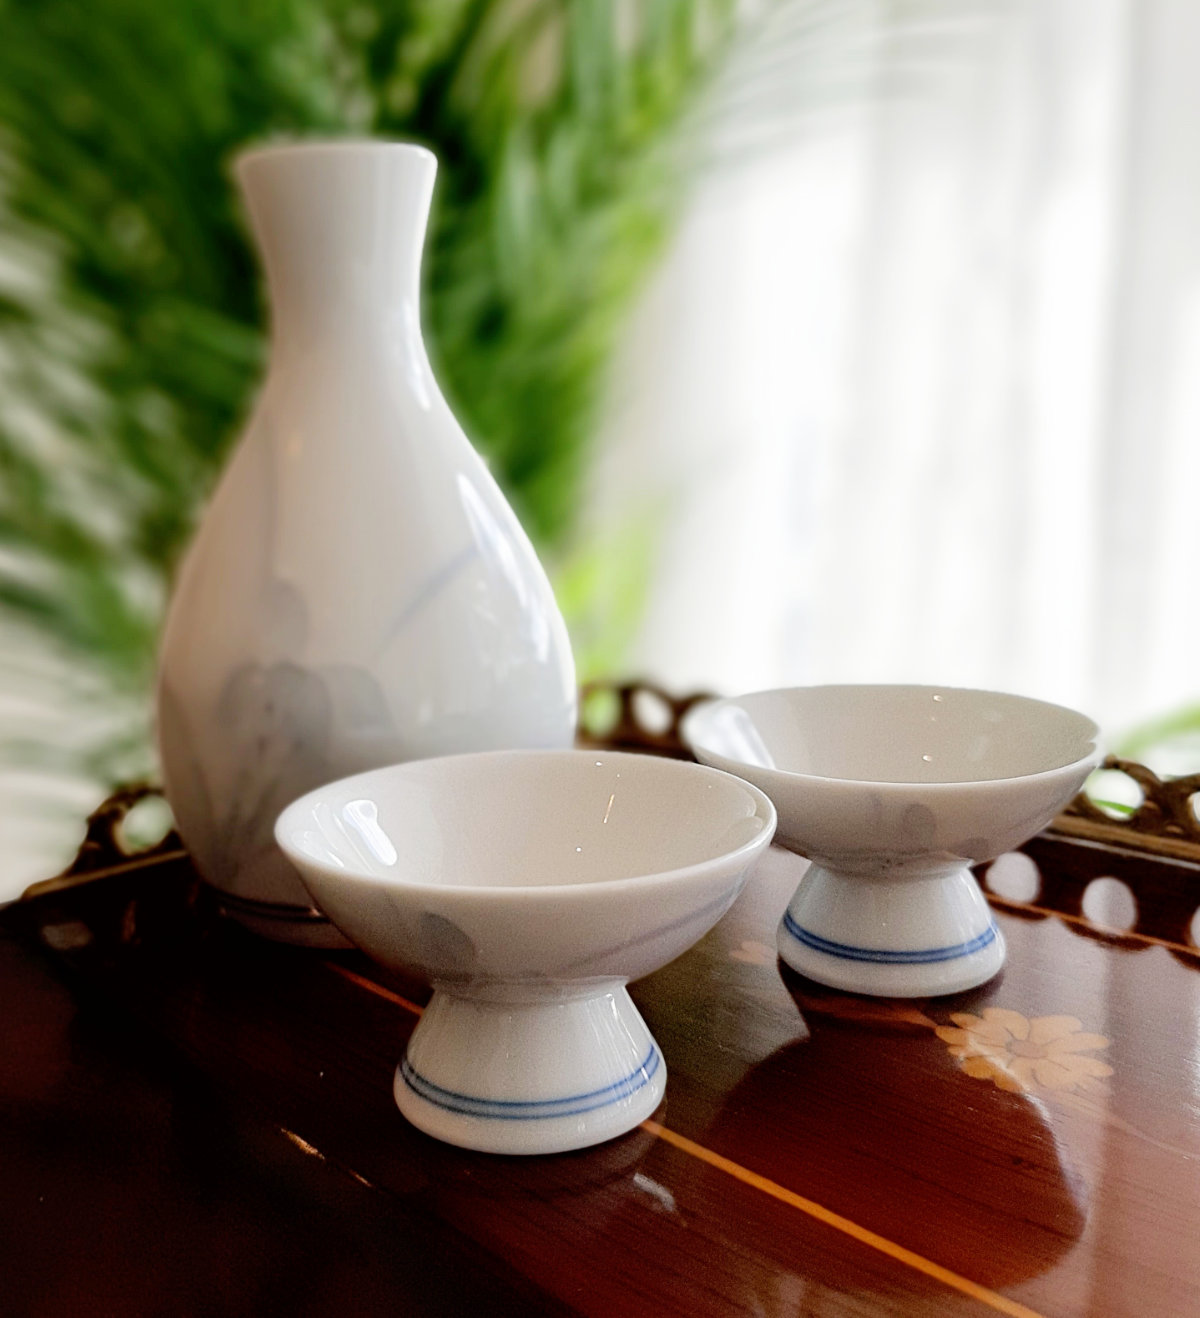 Reisschnaps-Set, weiß, aus Porzellan, wohl aus Japan, blaues Dekor, Frontalansicht Set.